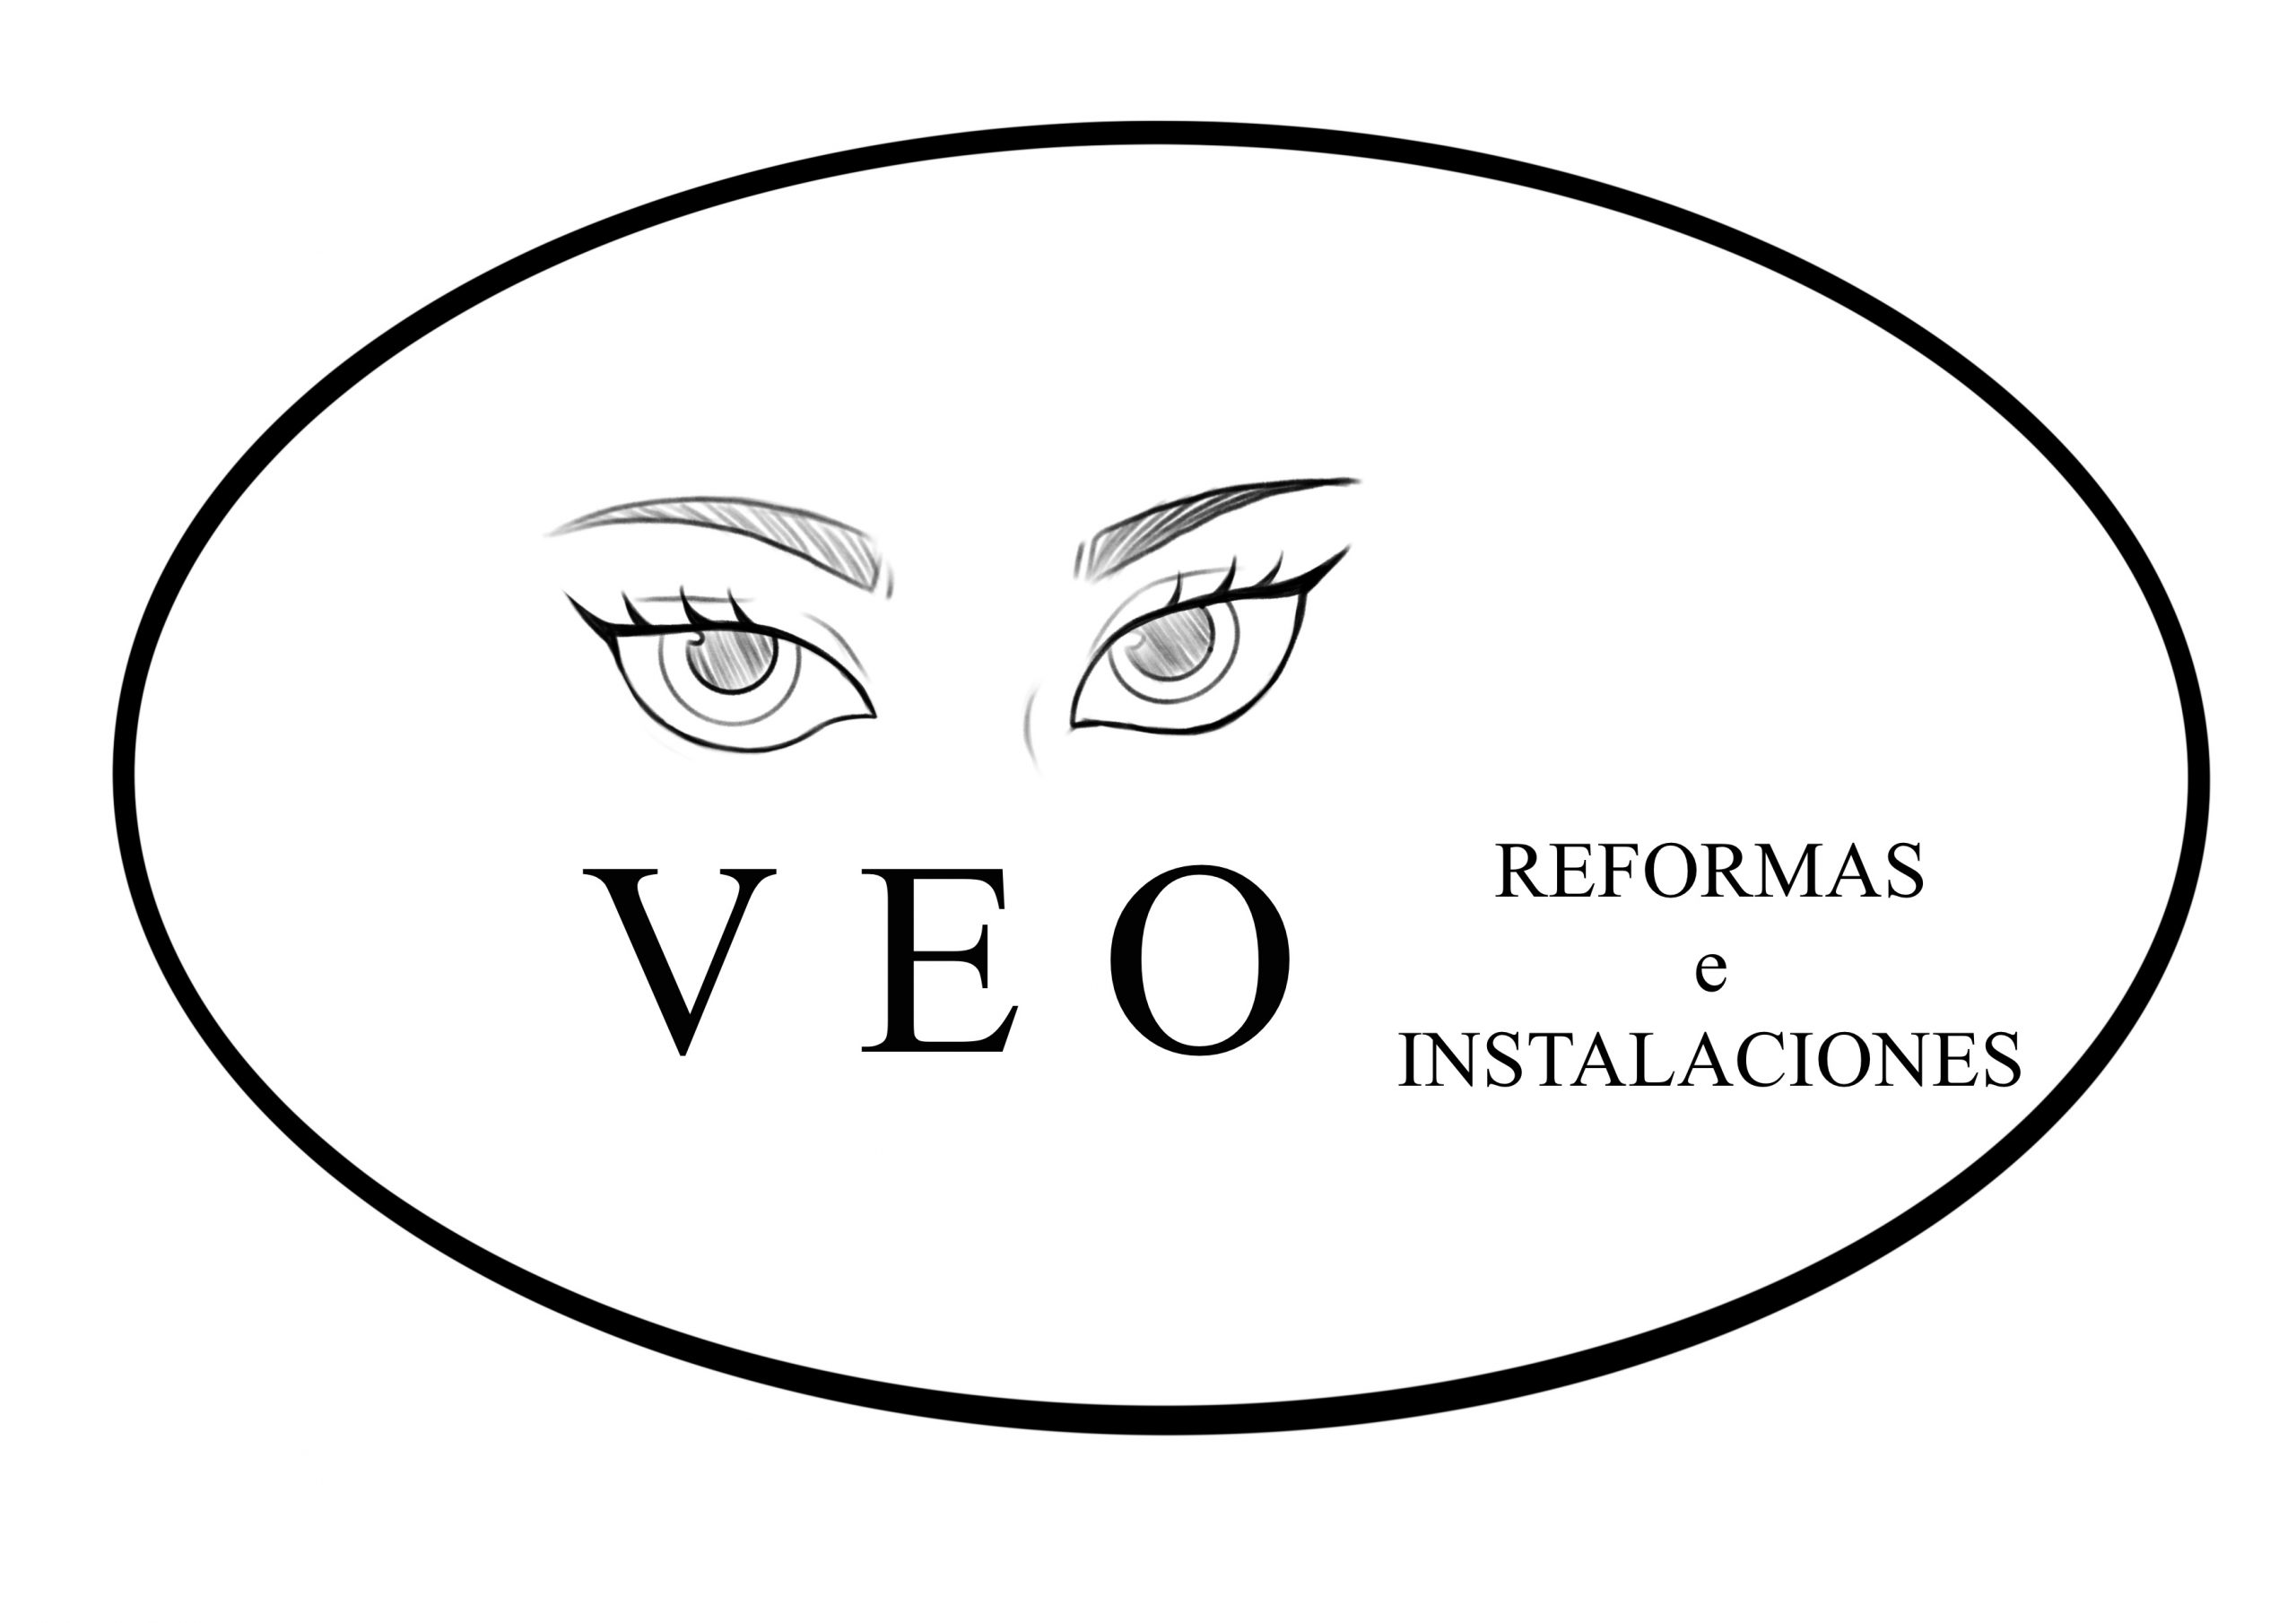 VEO Reformas e Instalaciones